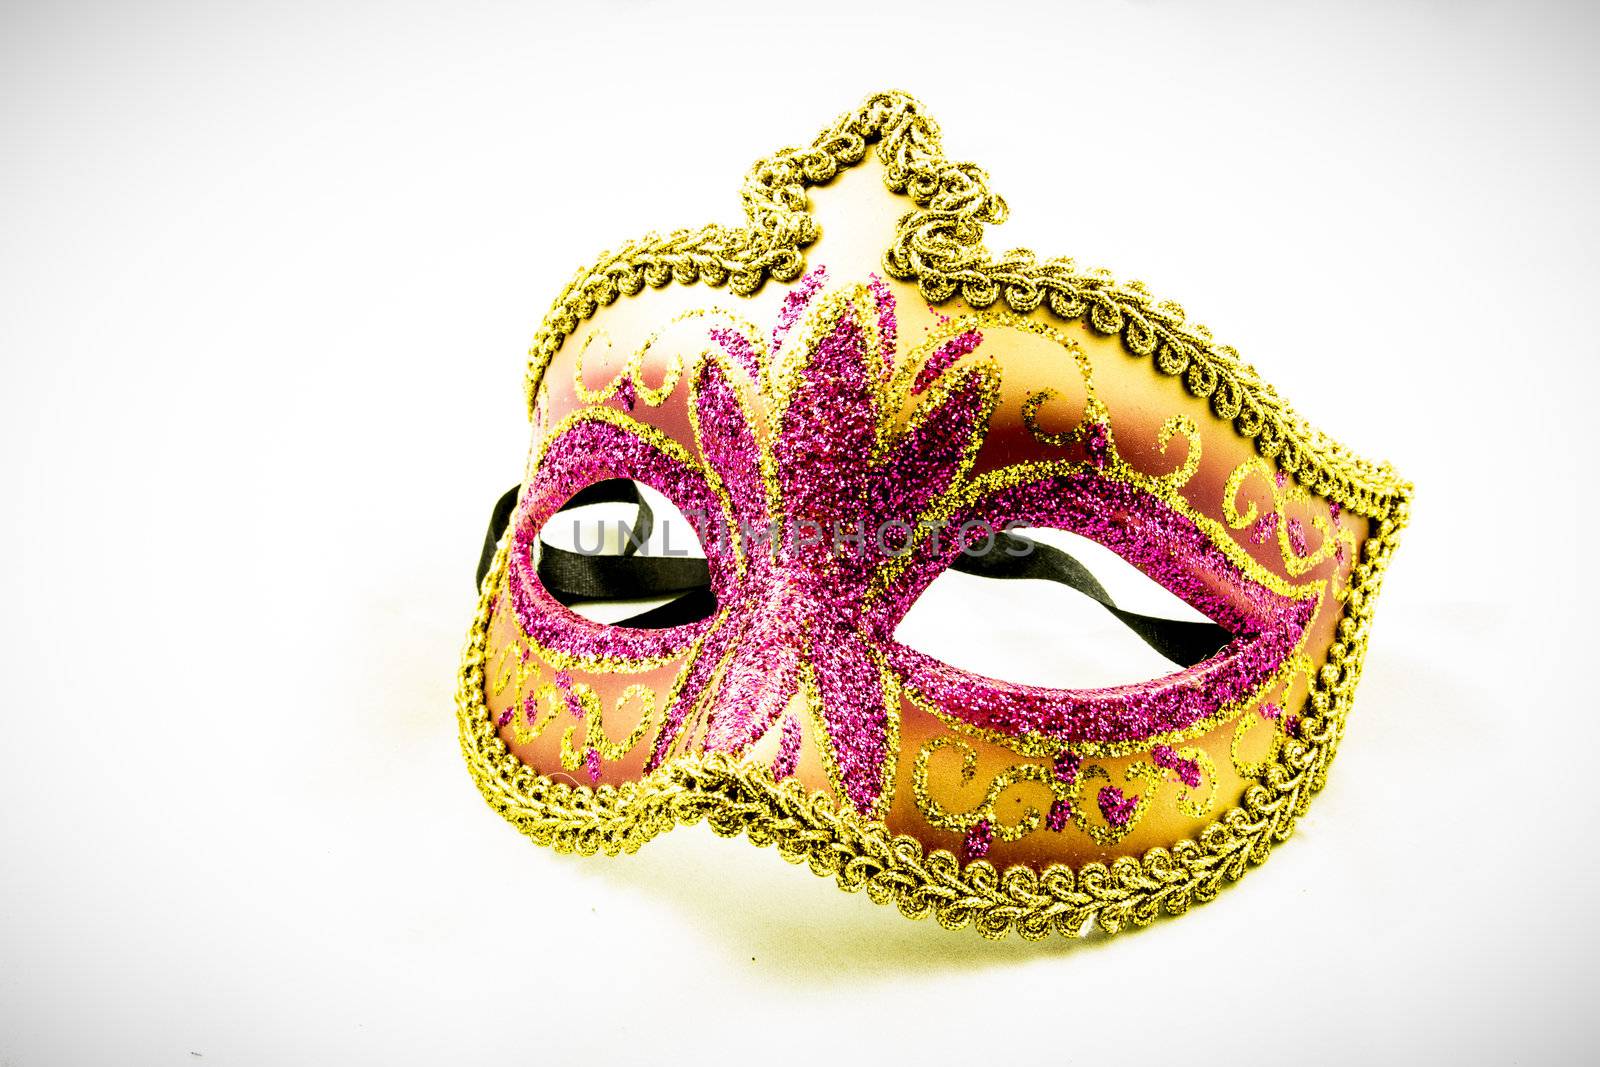 Venetian carnival mask by imac666